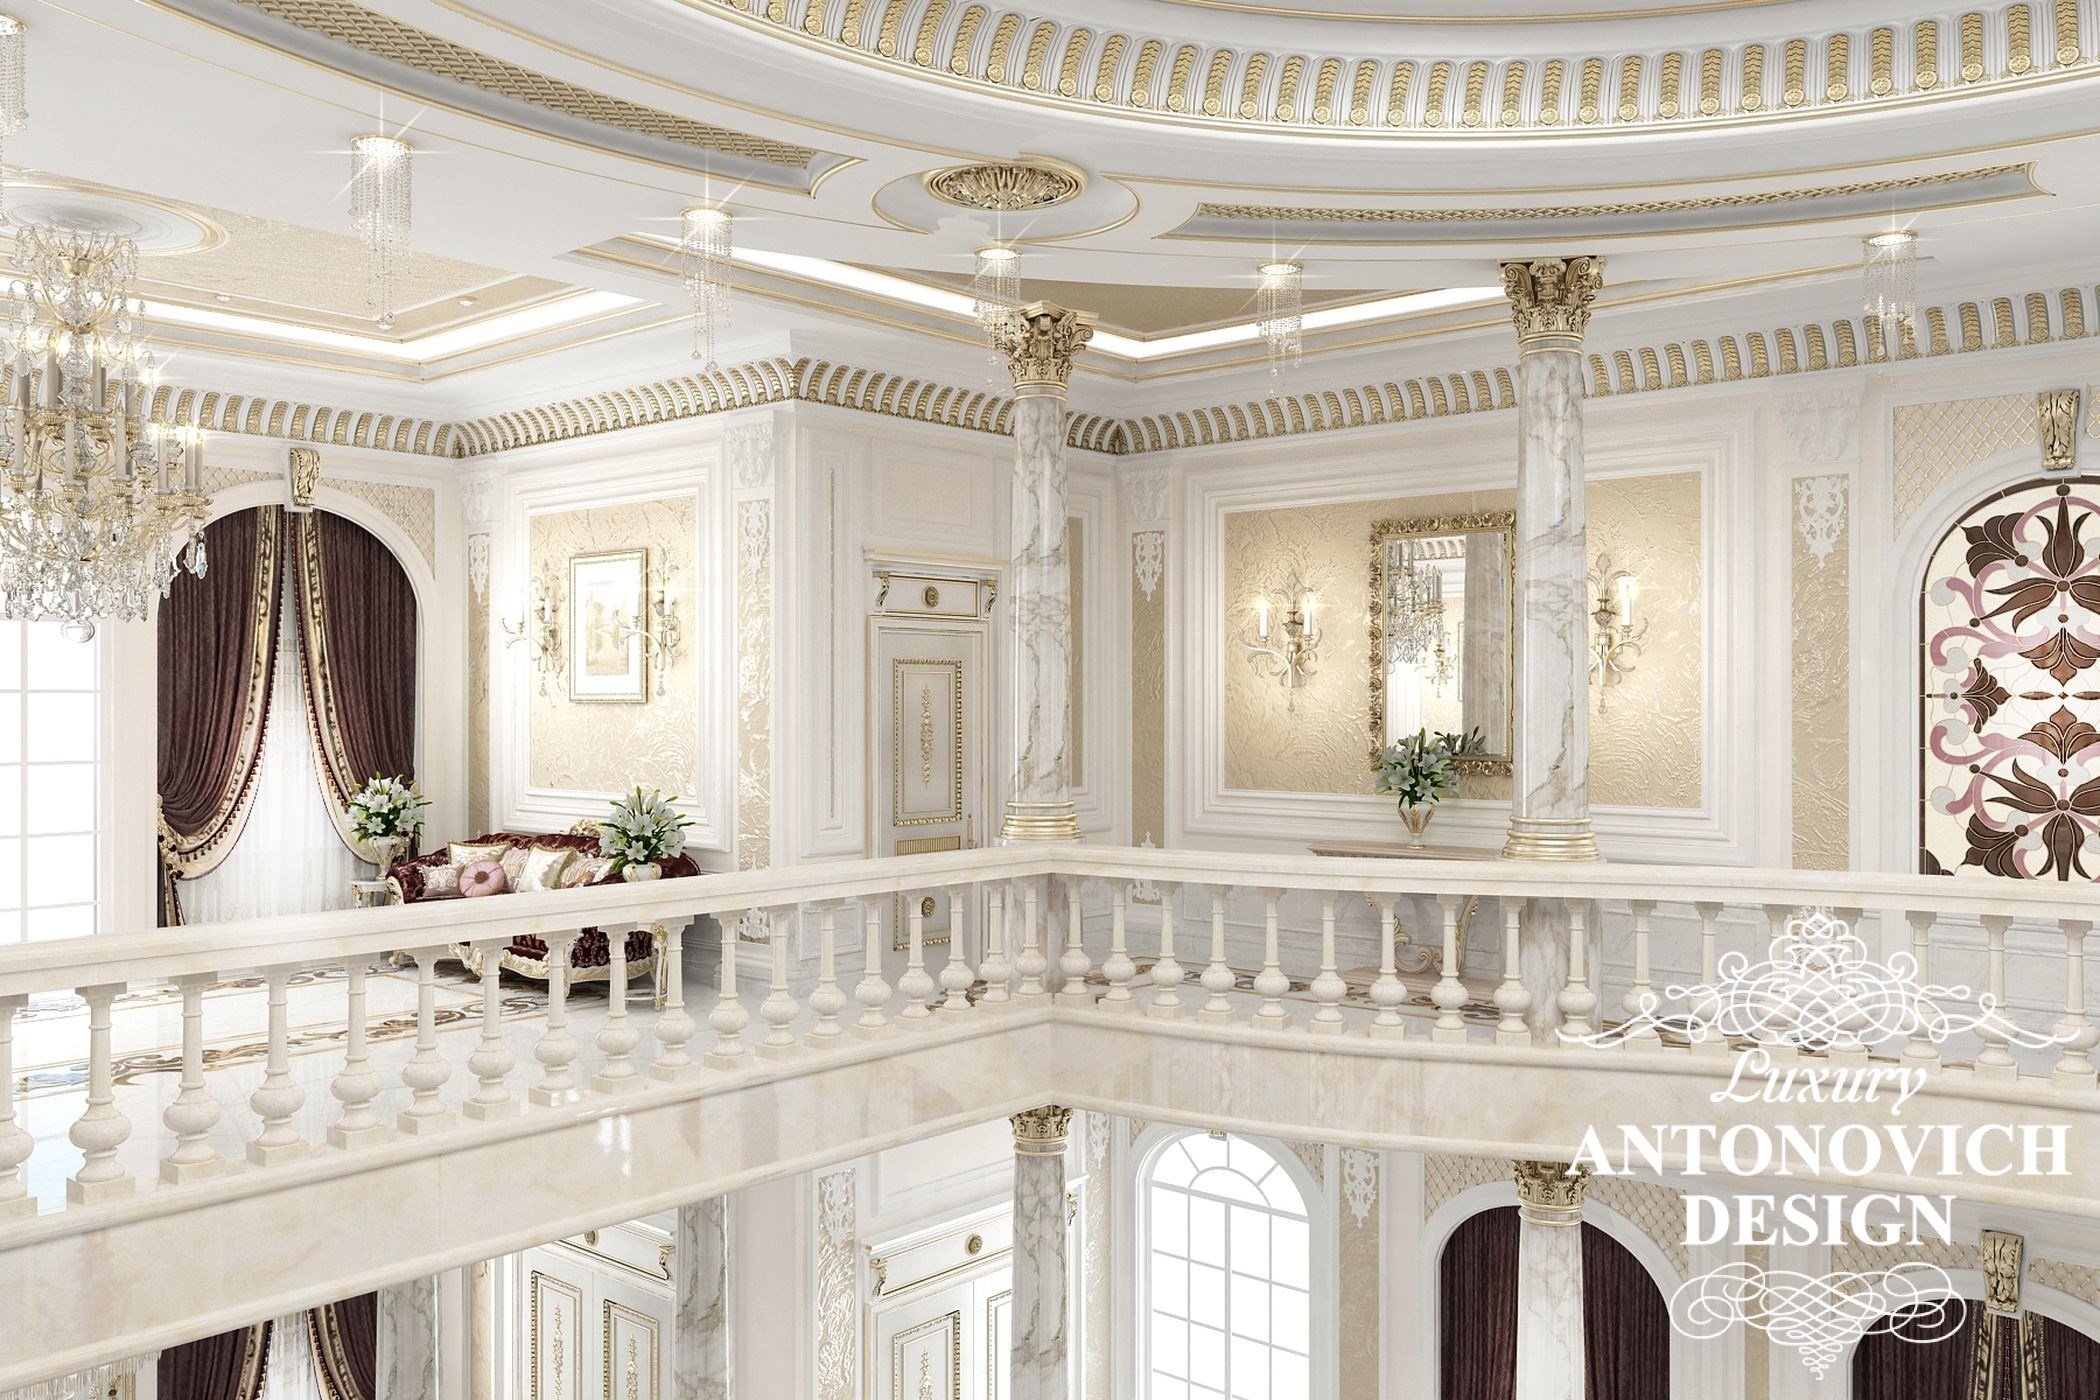 Проект колонн в холле в роскошном дворце от студии элитных интерьеров Luxury ANTONOVICH DESIGN